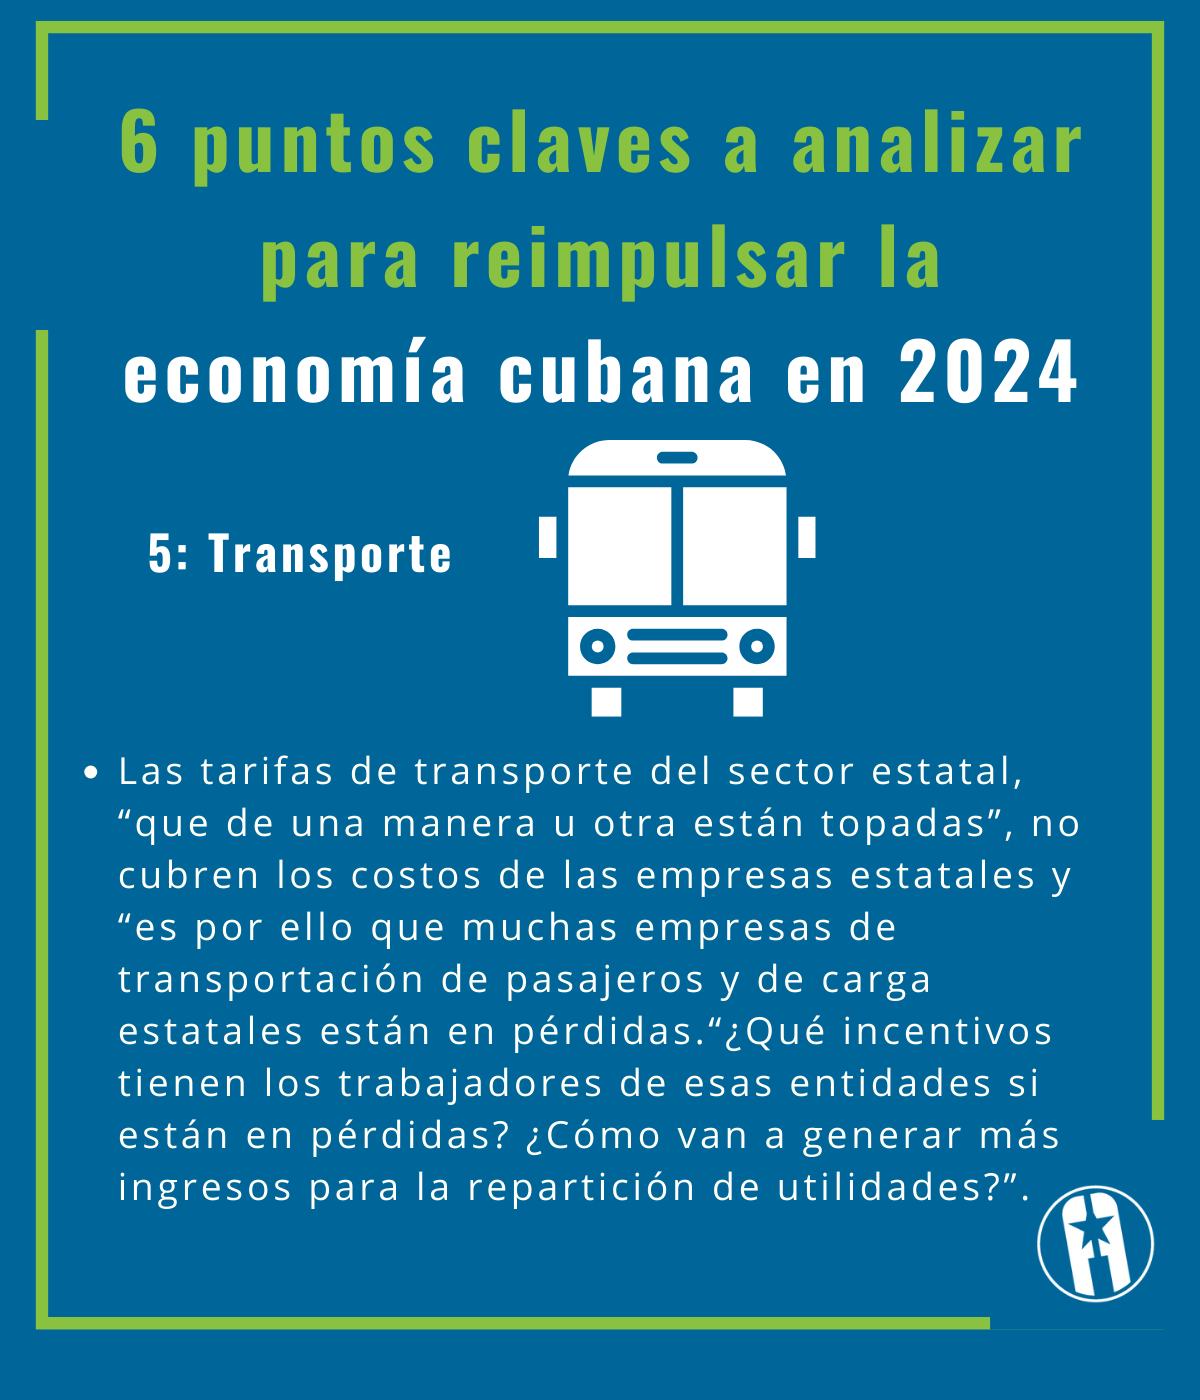 6 puntos claves a analizar para reimpulsar la economía cubana en 2024